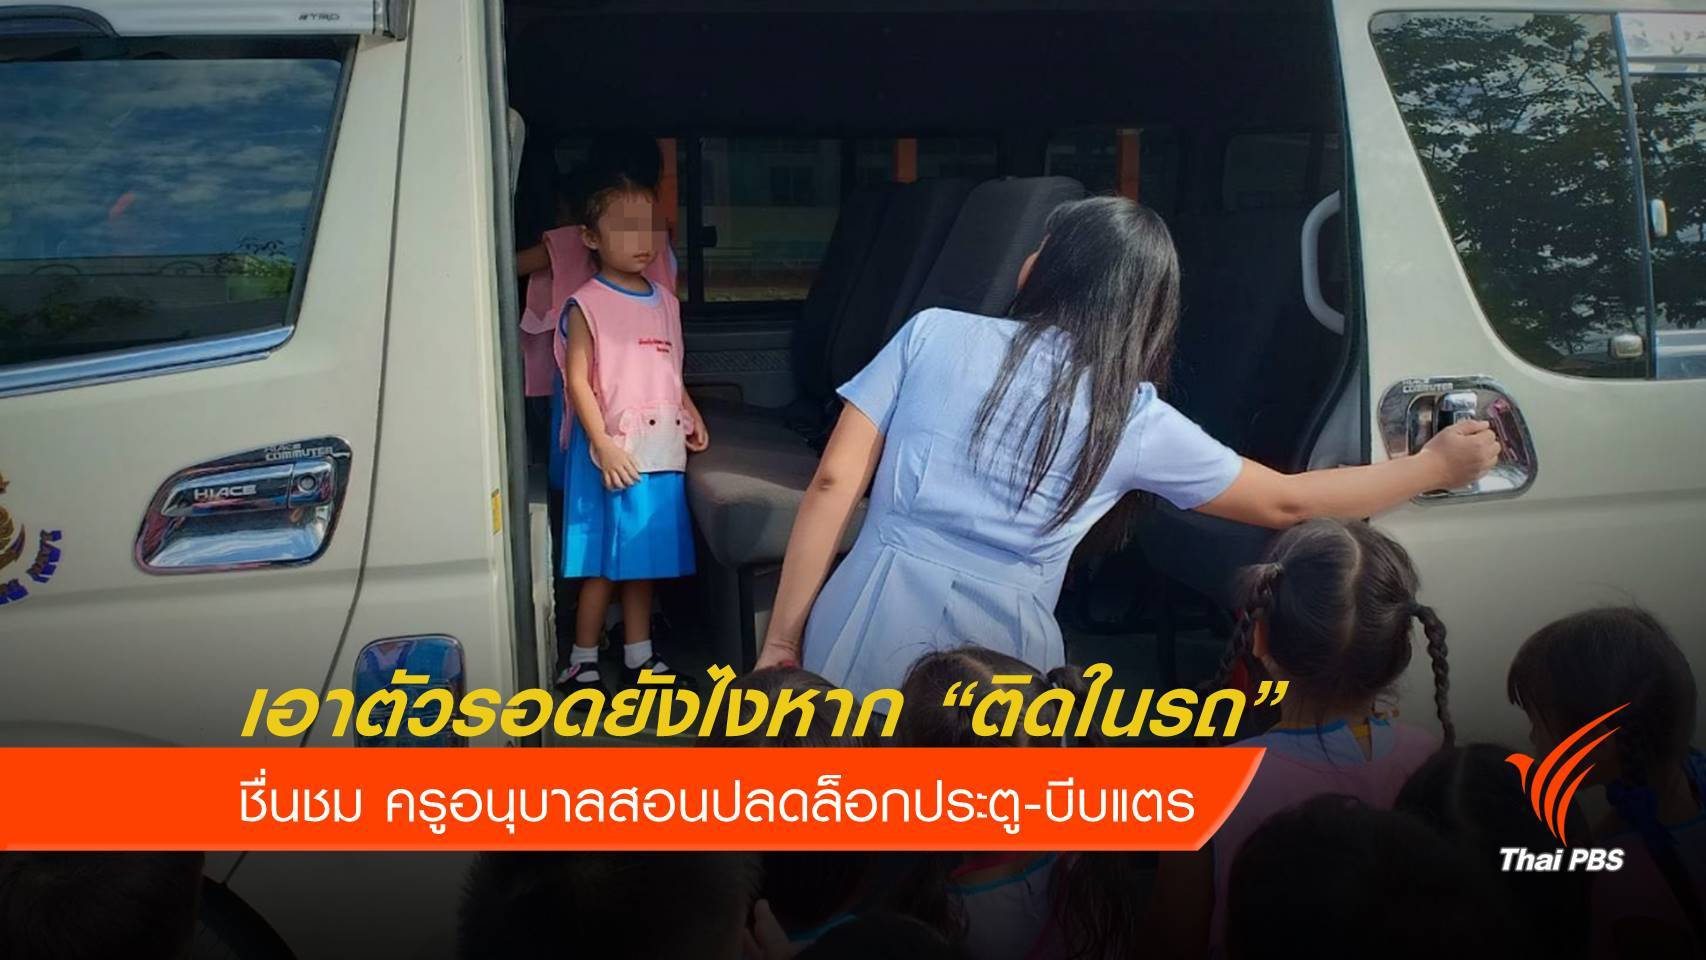 ชื่นชม! ครูสอนเด็กเอาตัวรอดเมื่อติดในรถตู้ "ปลดล็อก-บีบแตร"